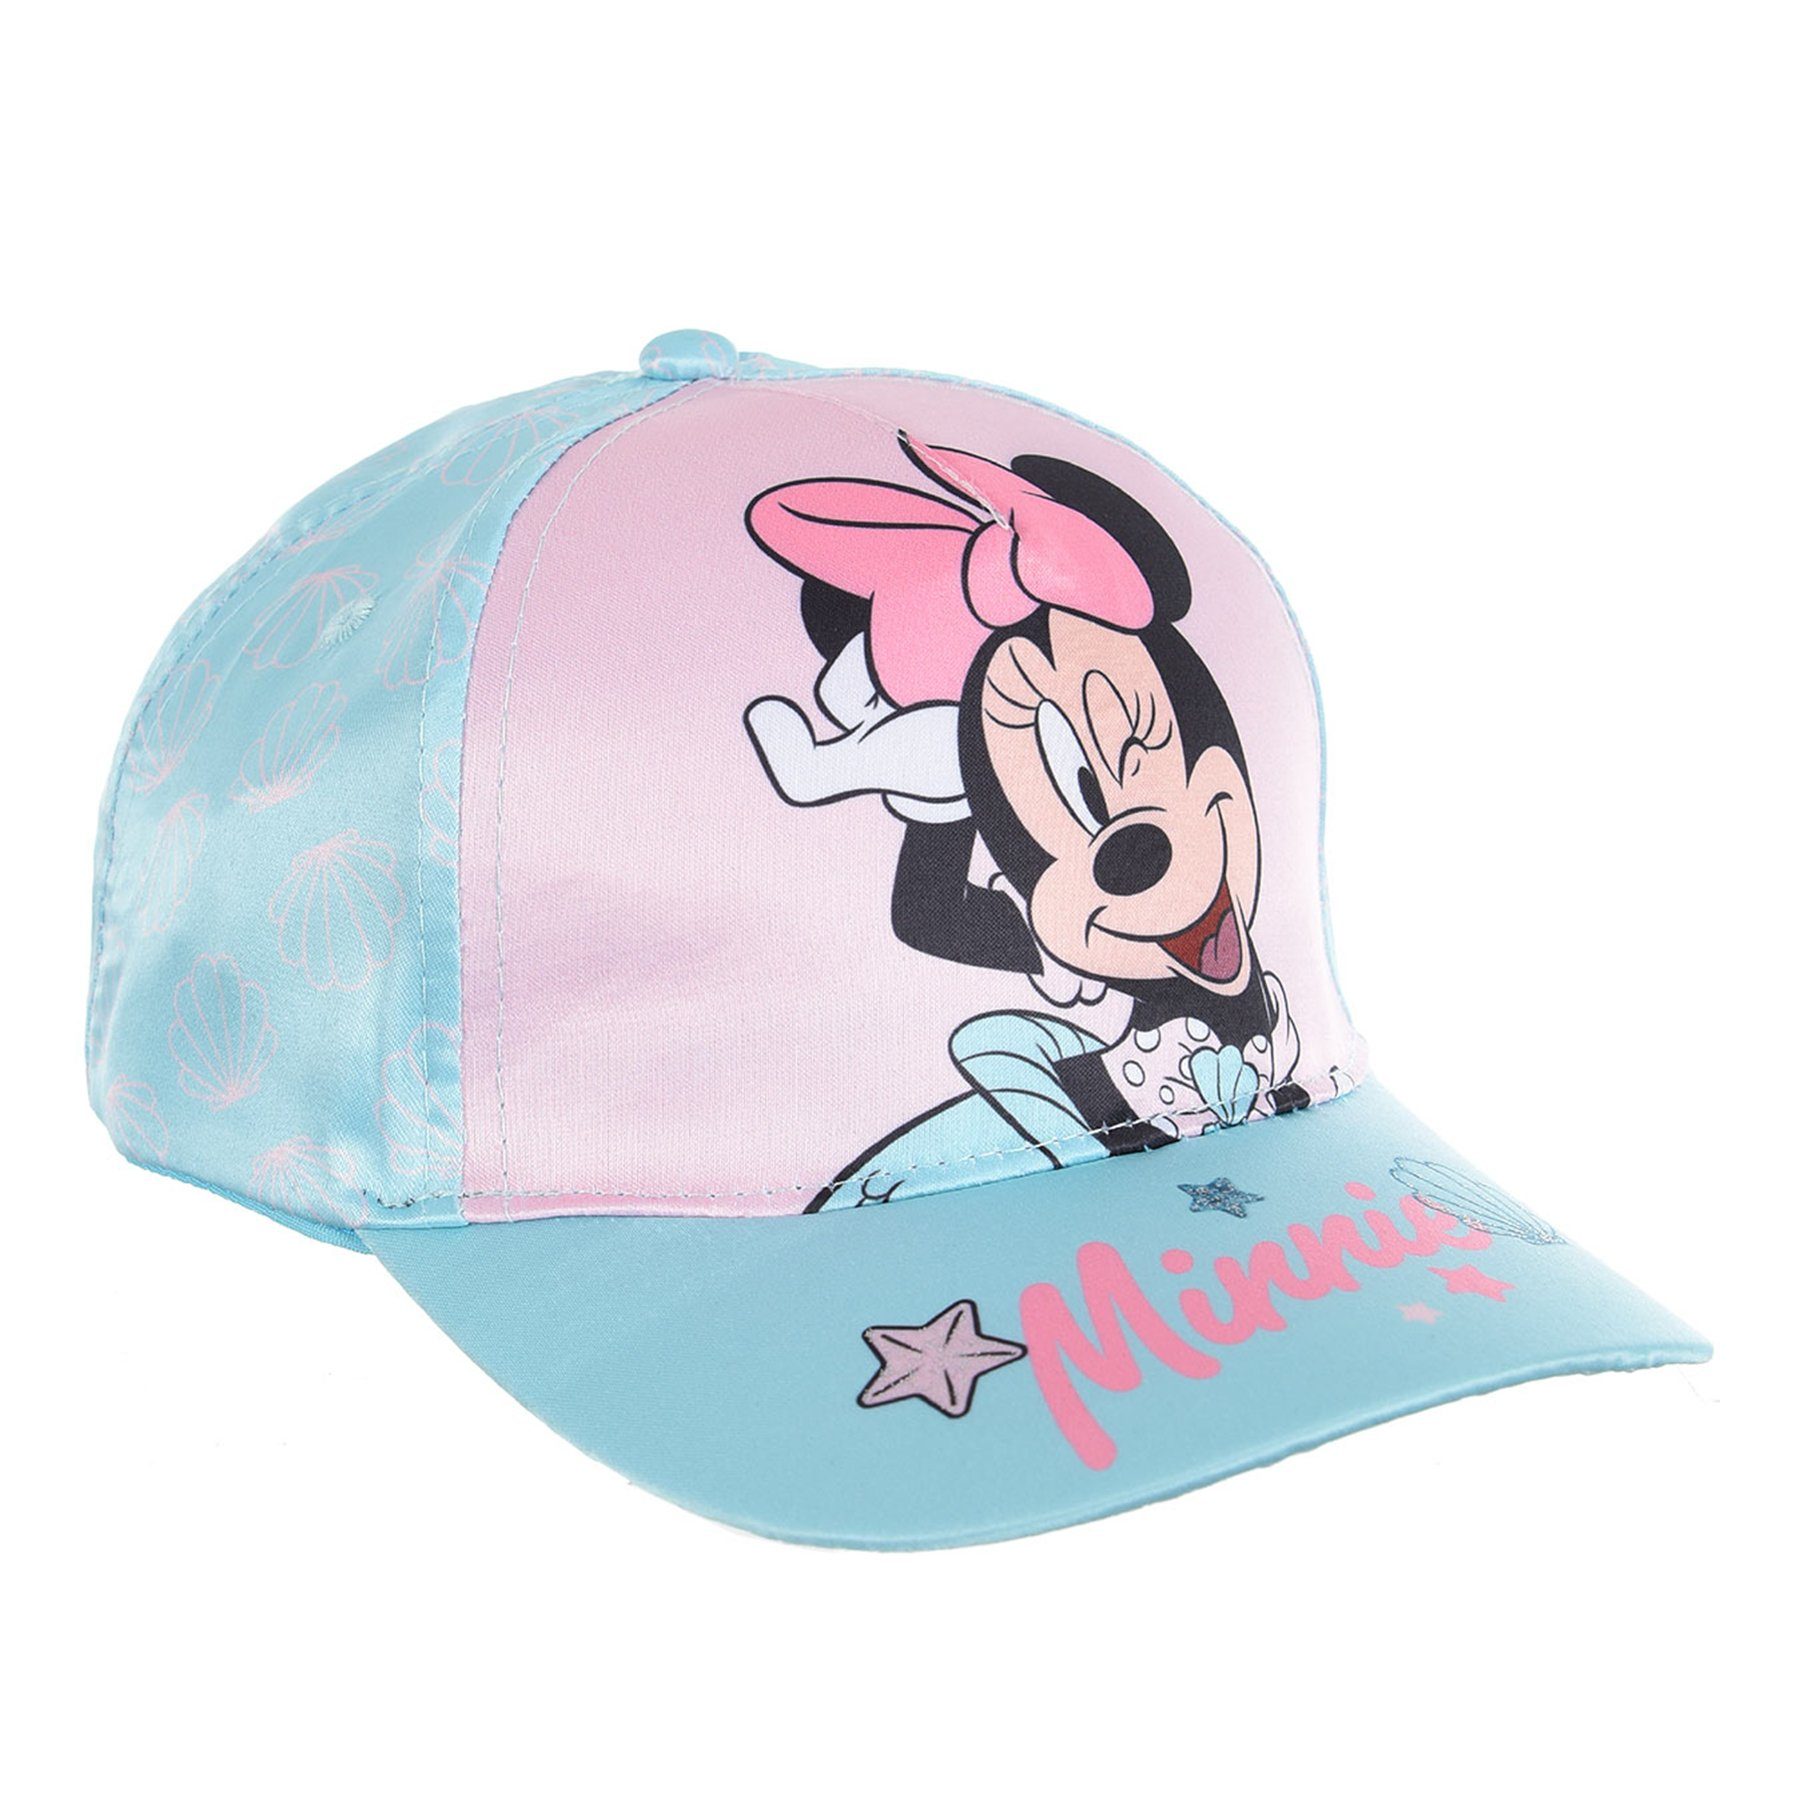 Disney Minnie Mouse Baseball Cap Kappe Mütze Rosa